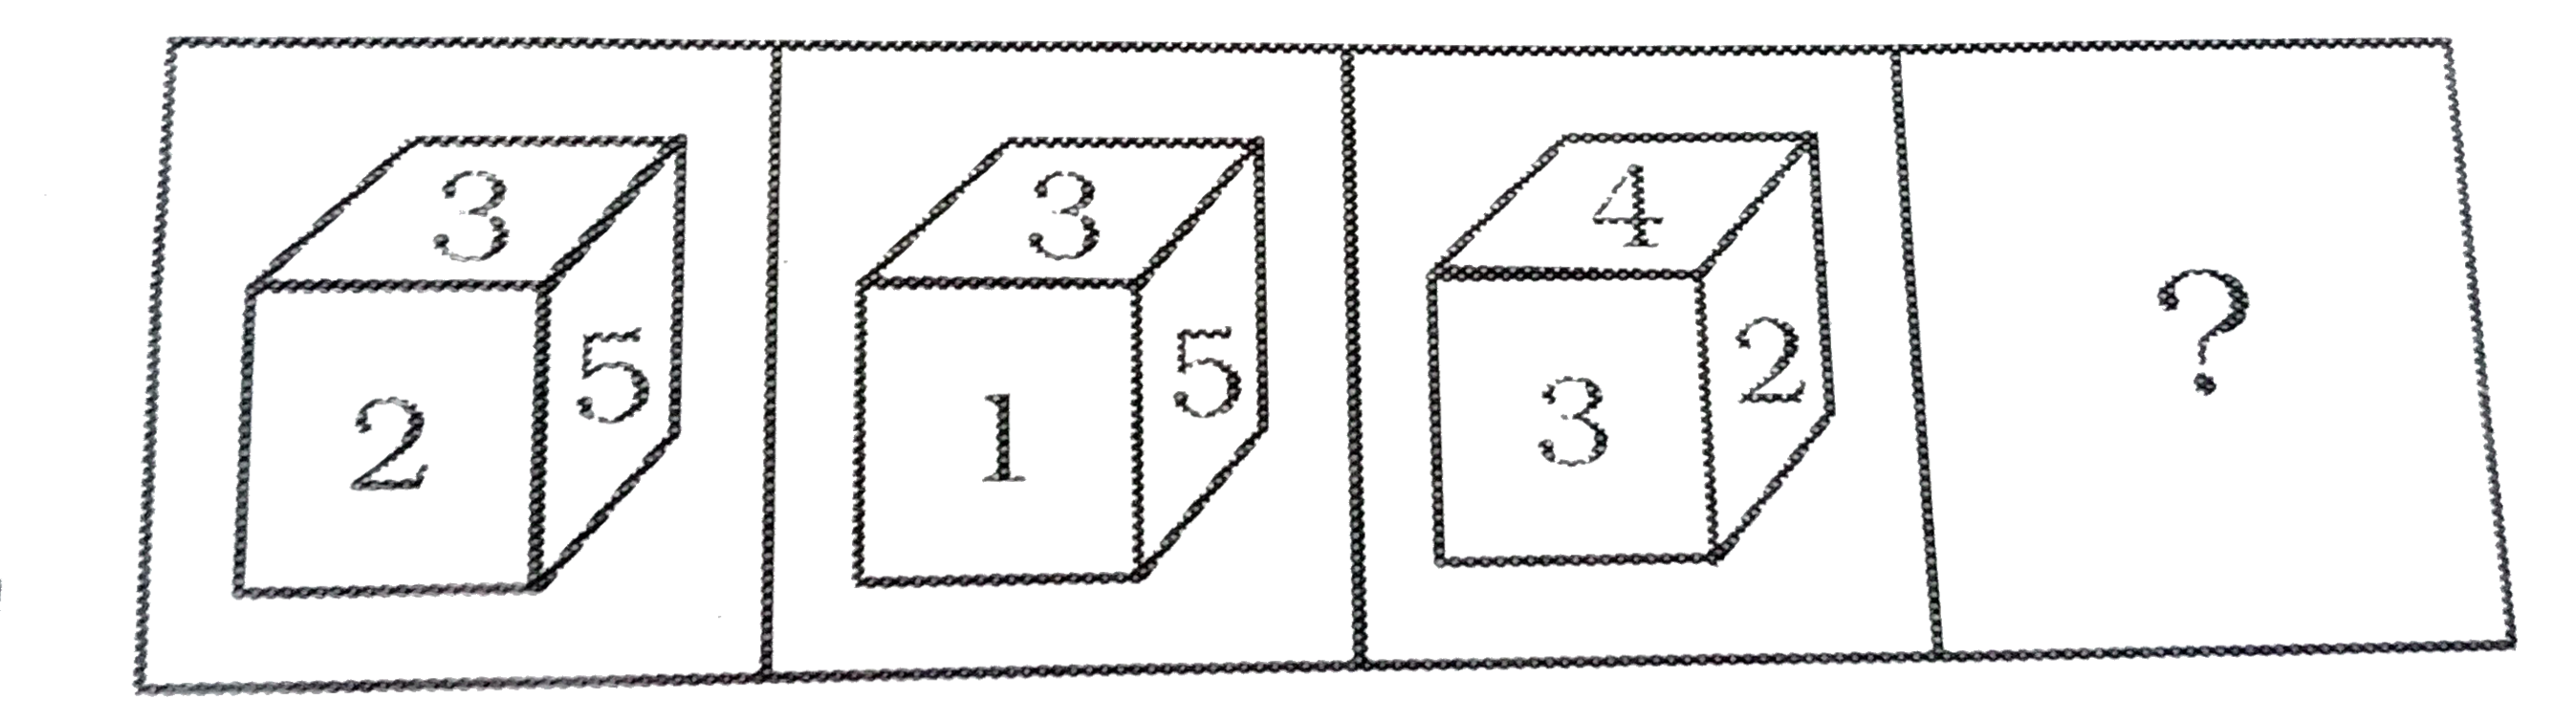 एक समान घन के तीन चित्र दिए गए हैं । घन के सभी फलकों पर 1 से 6 संख्या दी गई हैं । ऐसी एक आकृति चुनिए जो घन के खोलने पर दिखाई देगी ।